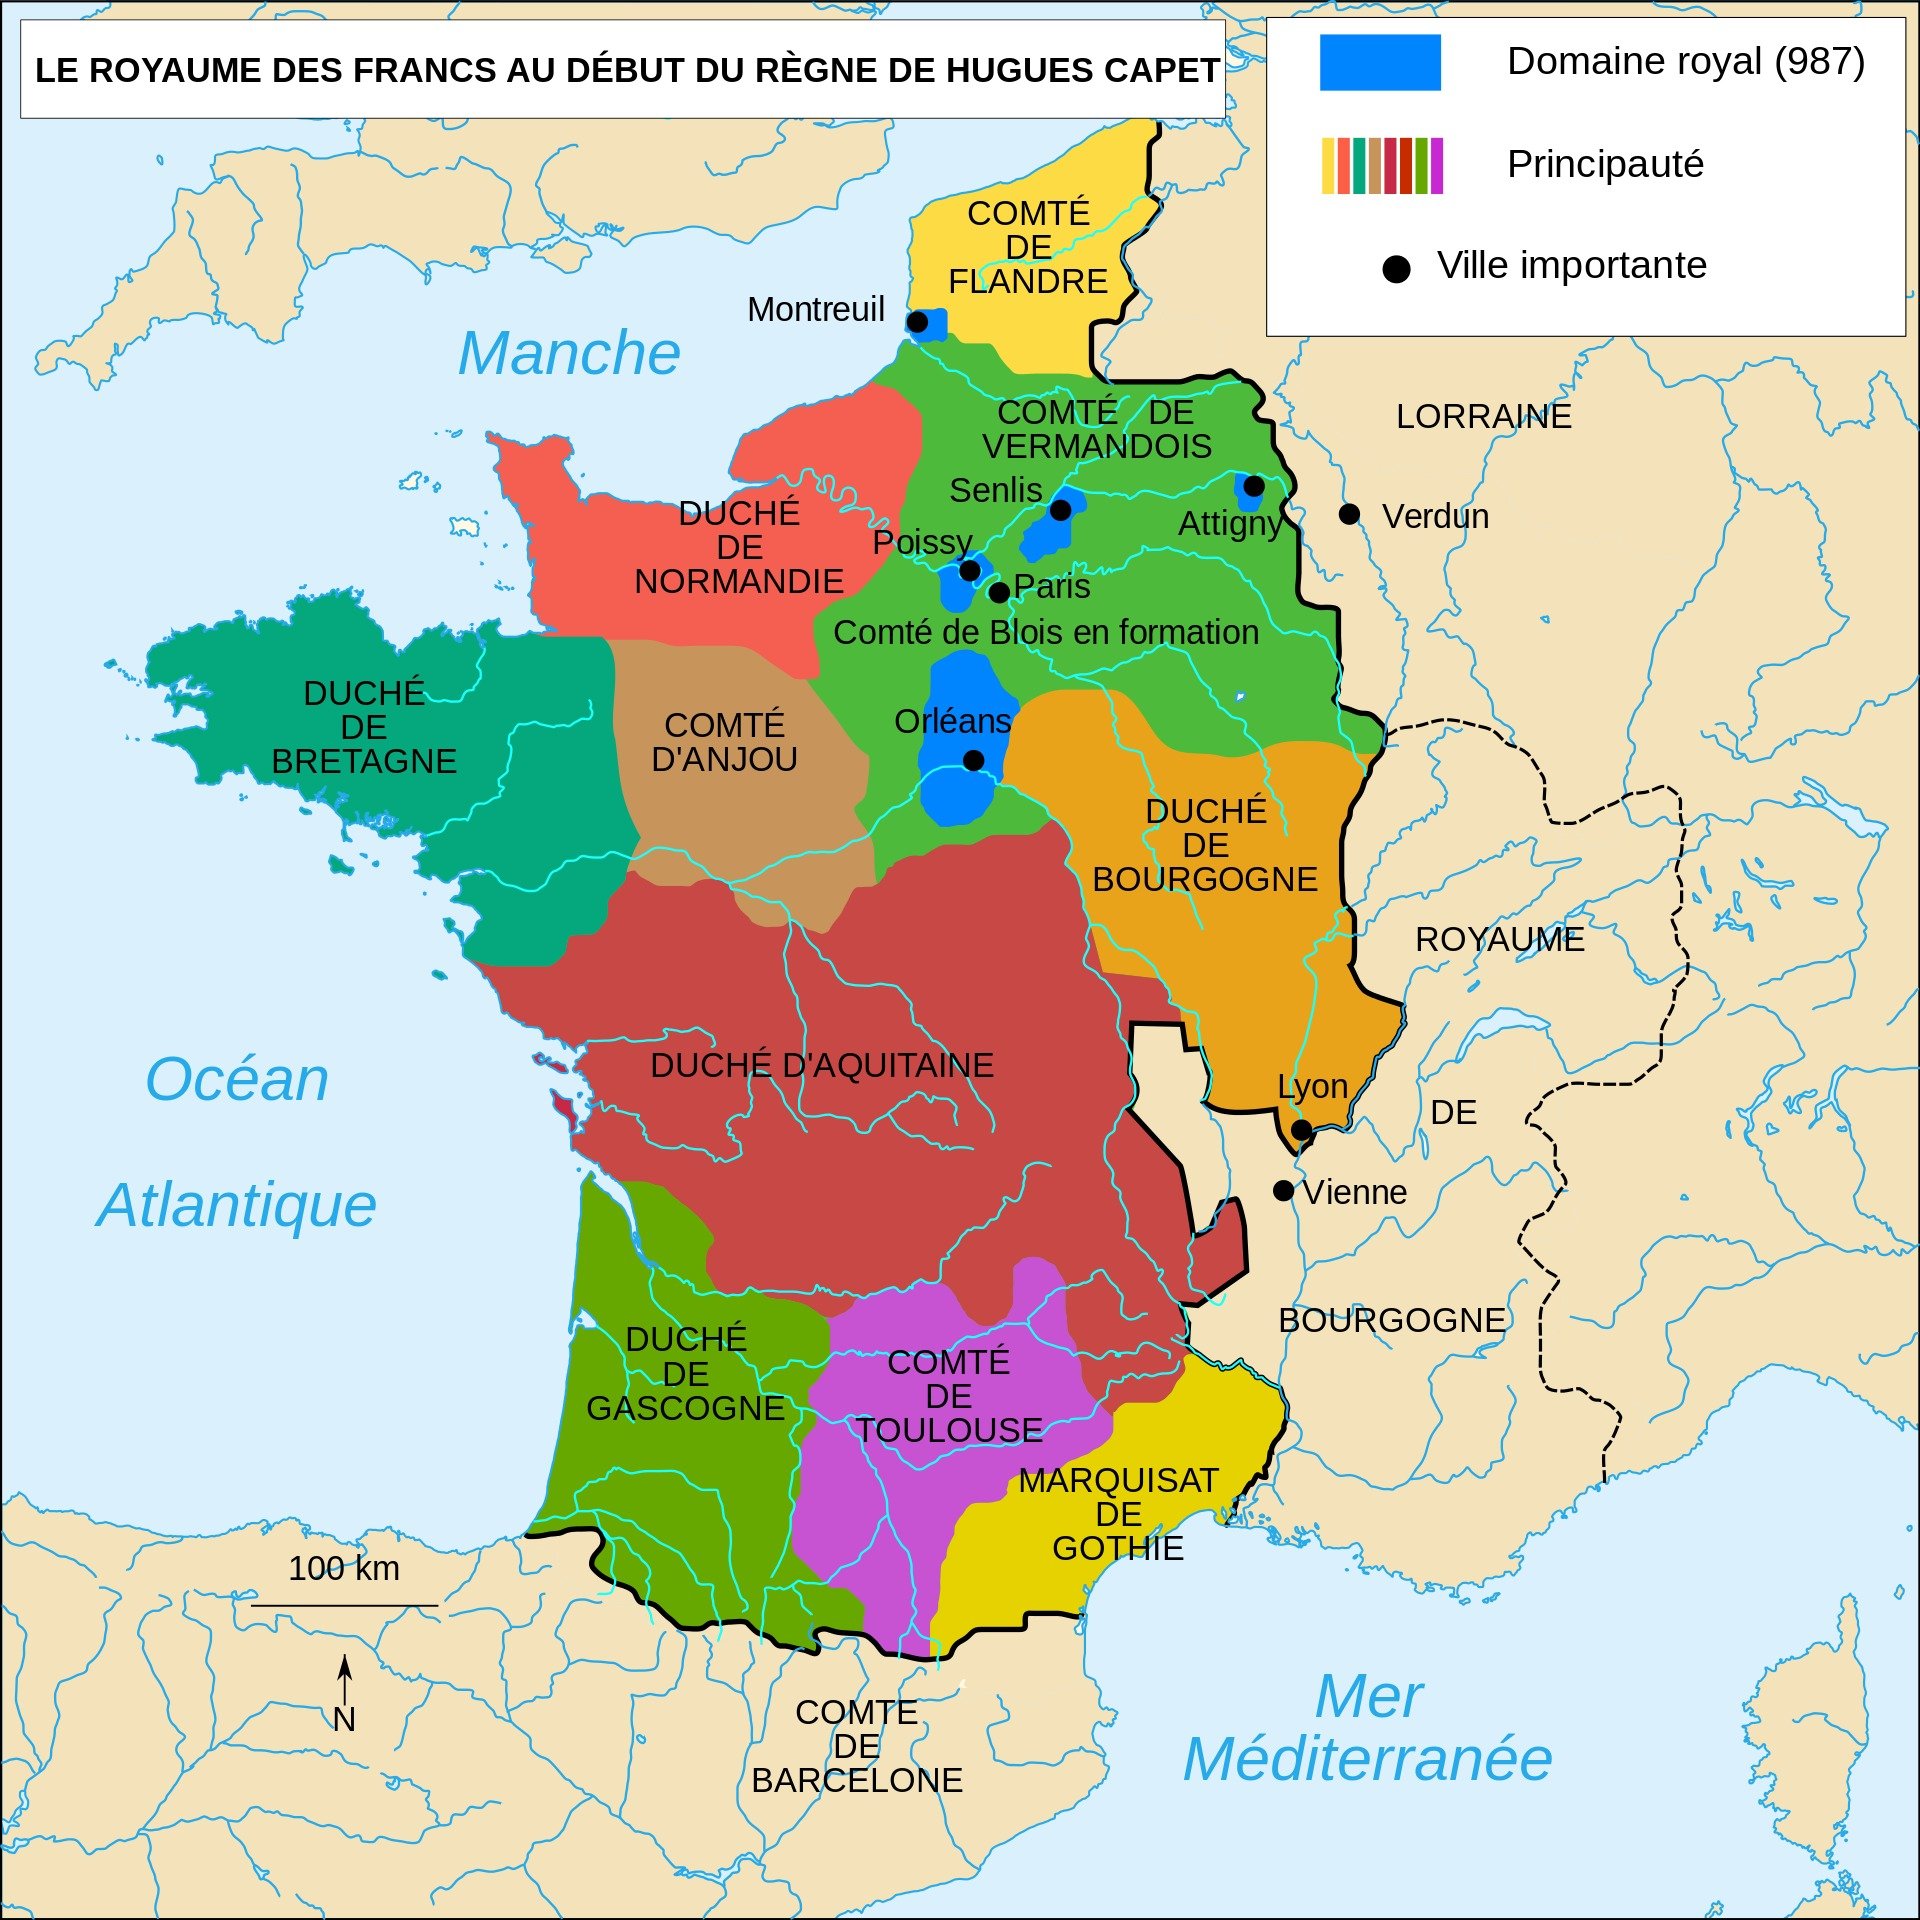 Le règne d'Hugues Capet - Roi des Francs (987-996) - Hist-europe.com